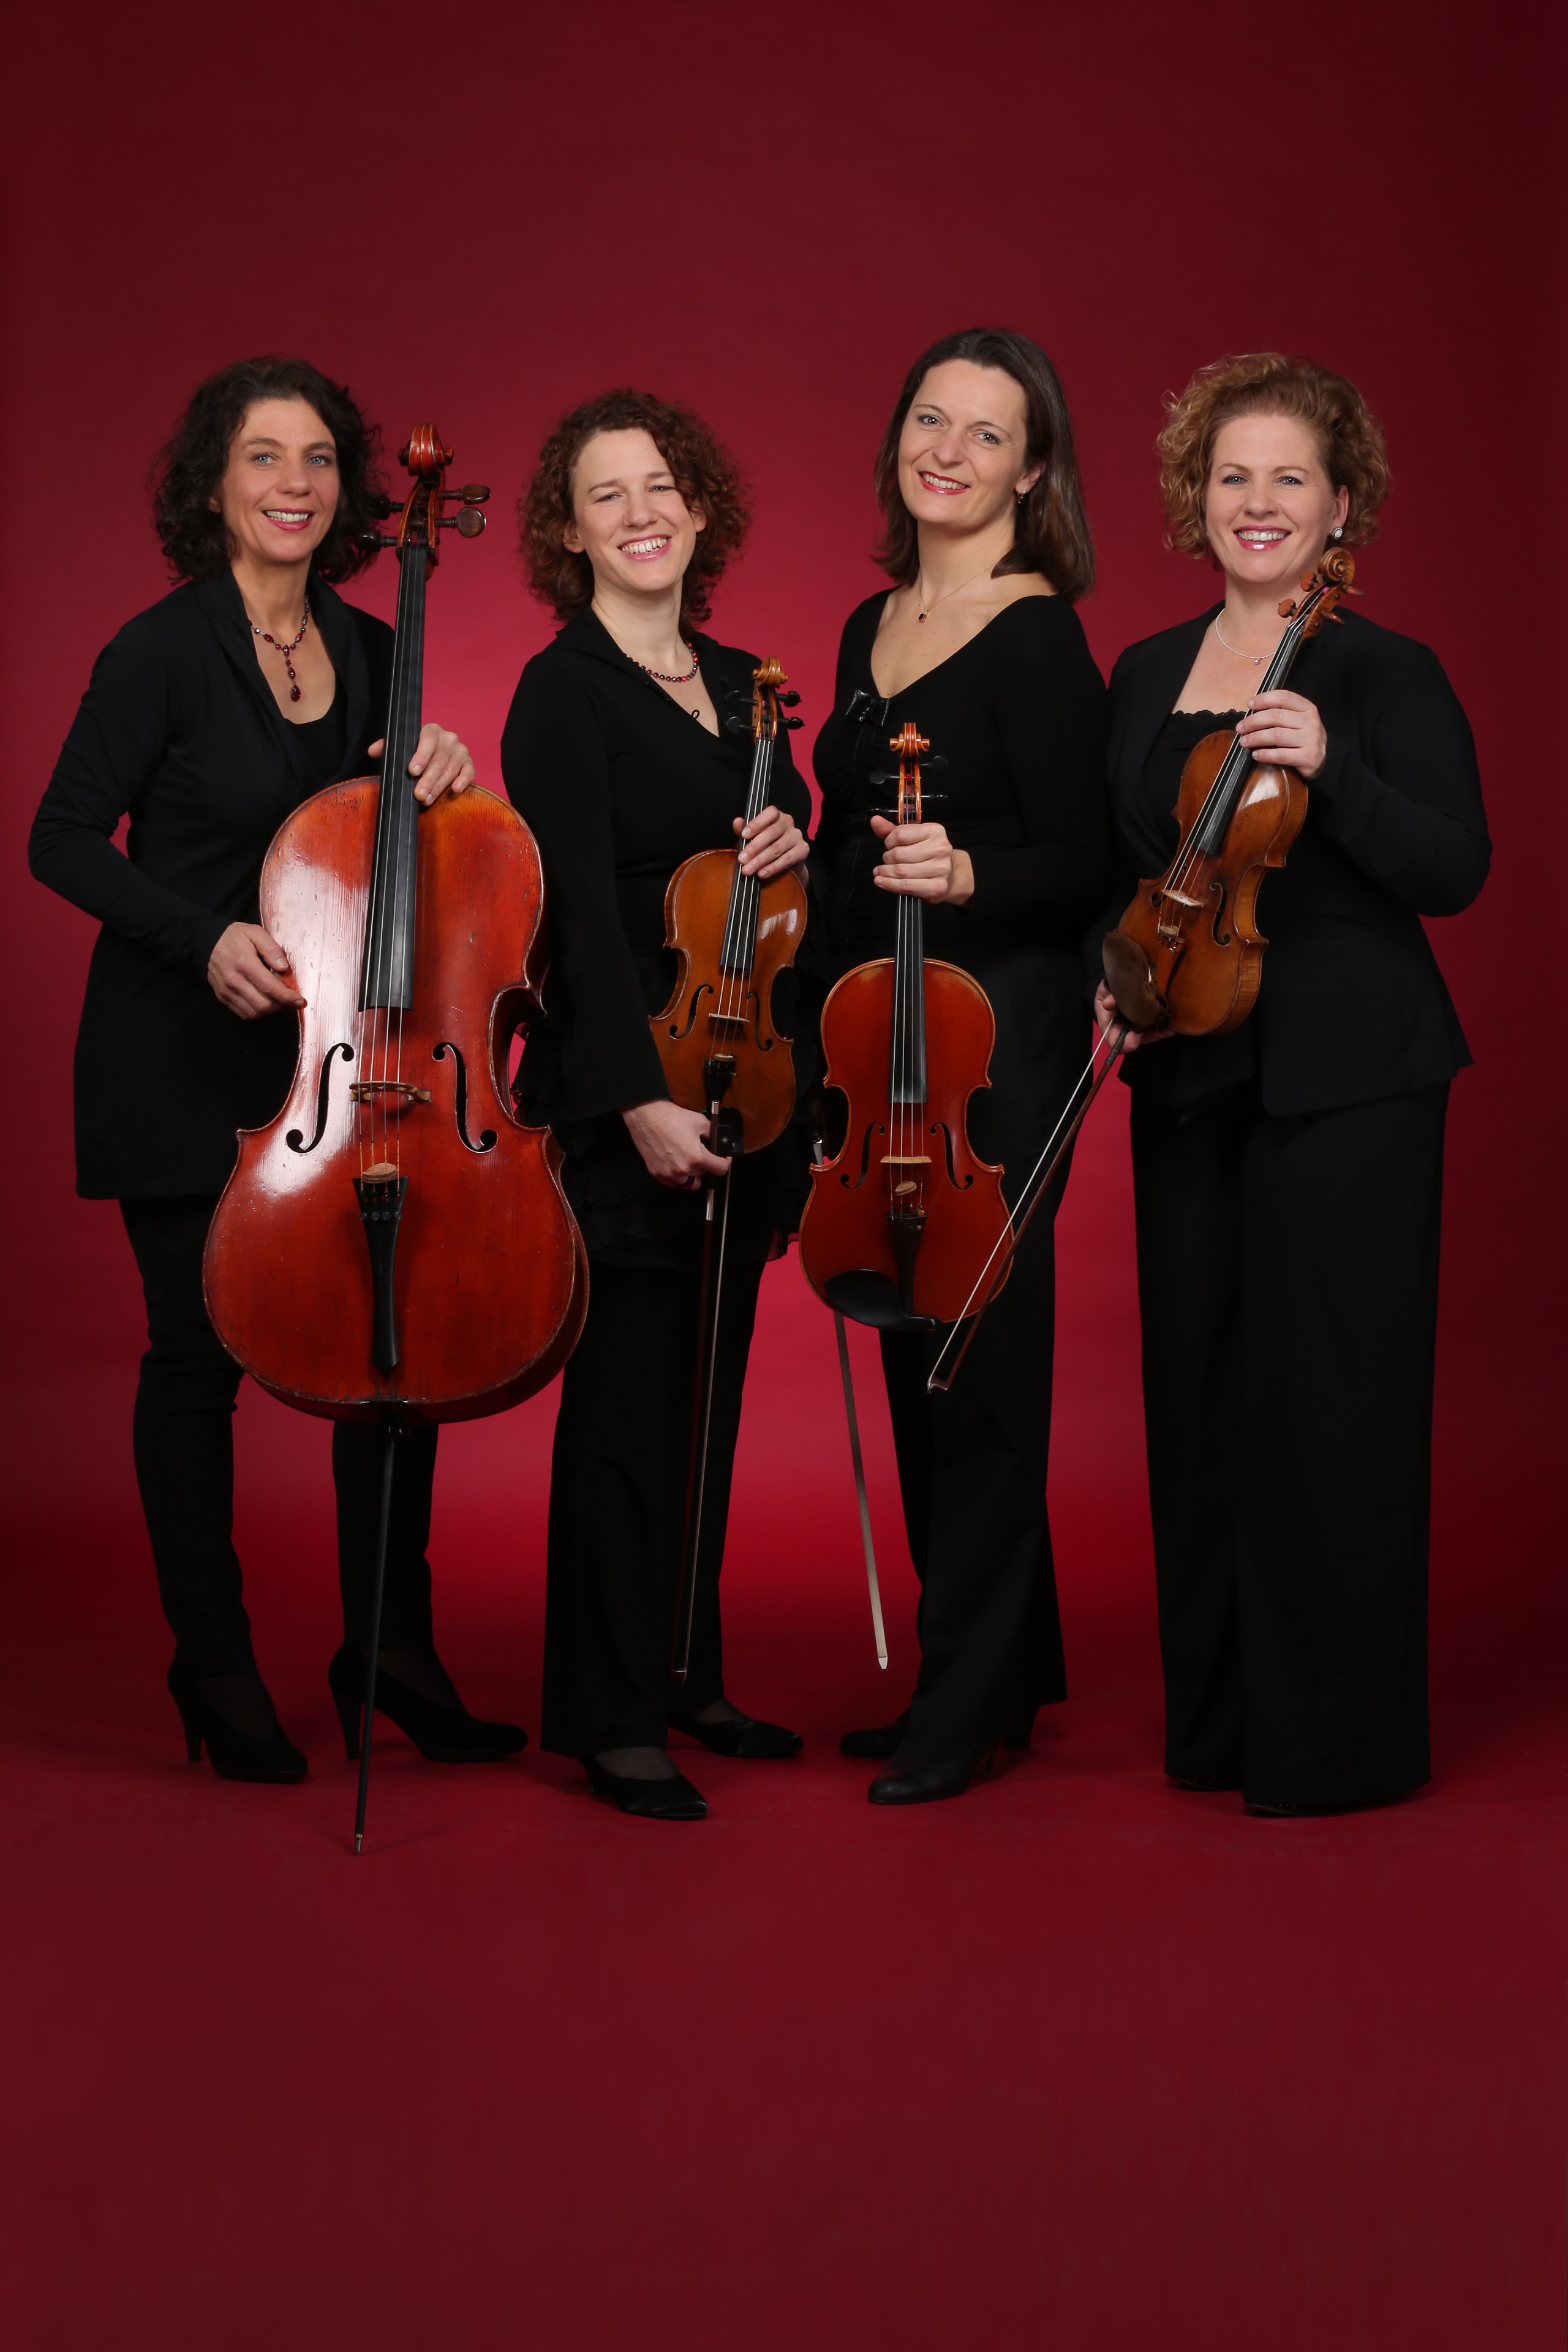 v.l.n.r.: Ulrike Zavelberg (Cello), Jana Andraschke (Violine), Martina Horejsi (Viola), Irmgard Zavelberg (Violine)